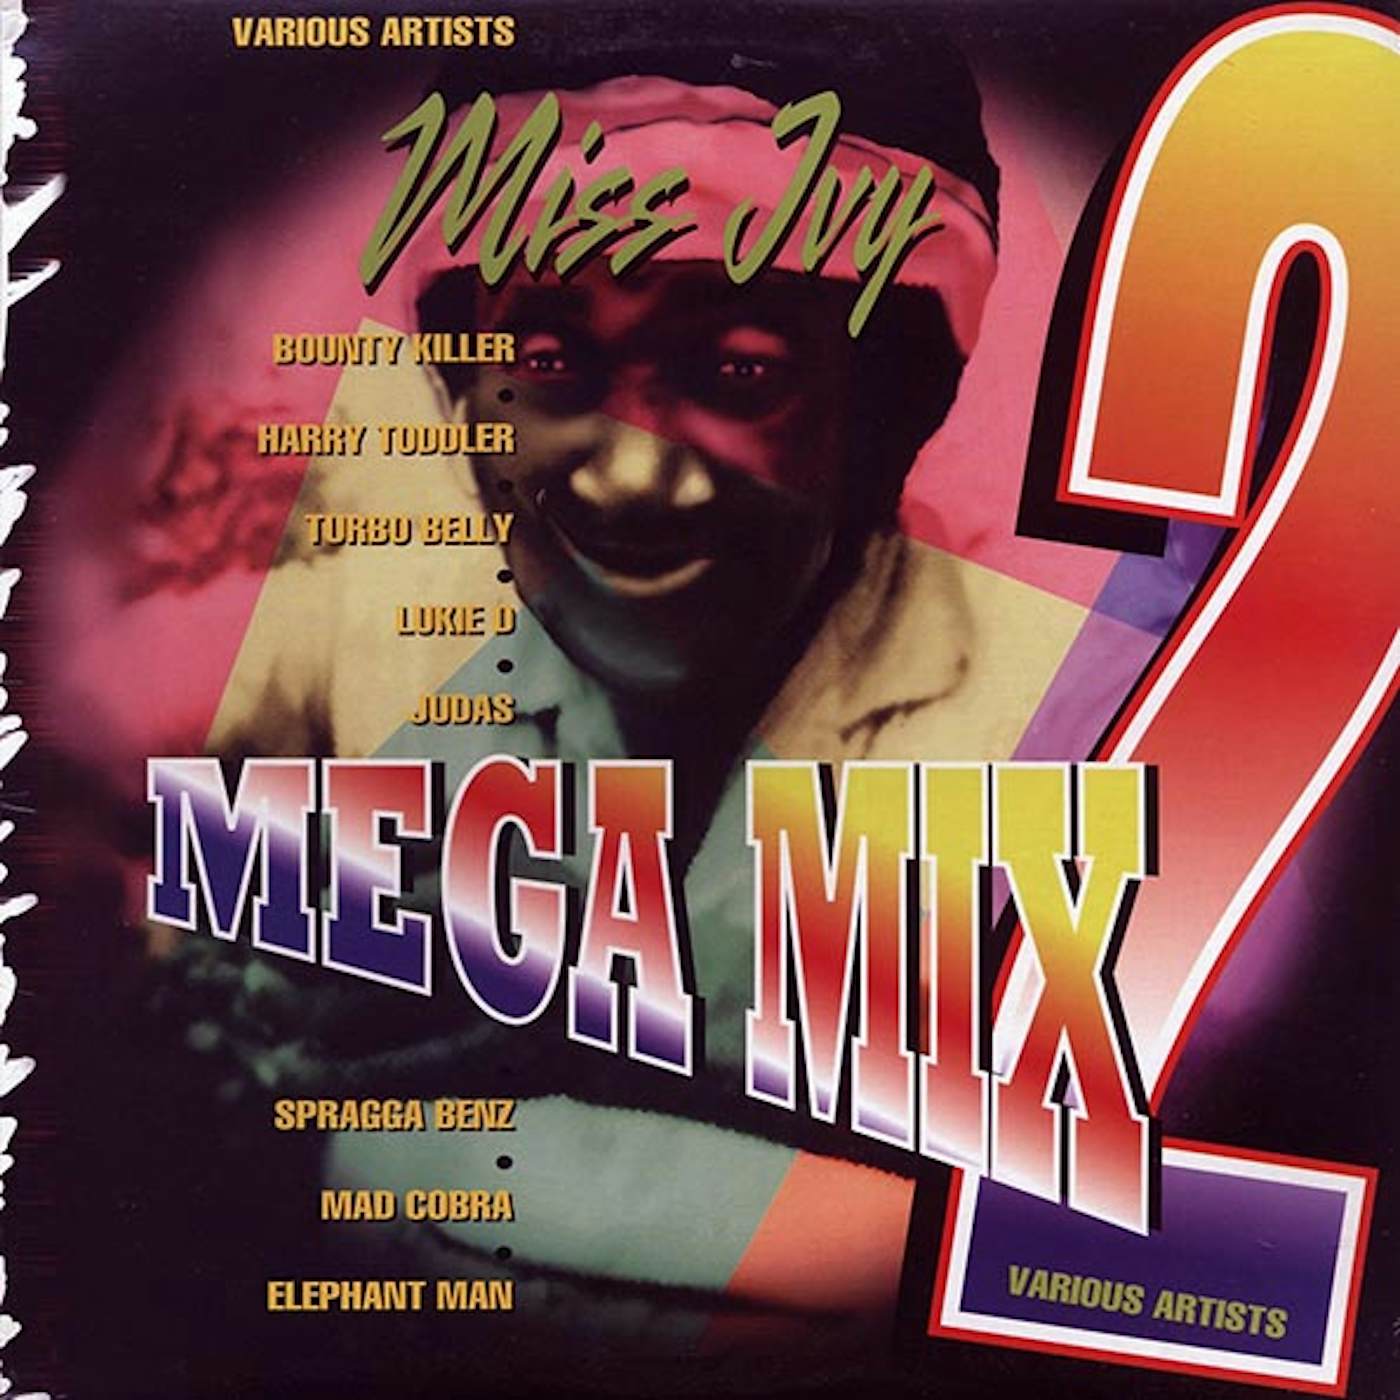 Bounty Killer, Elephant Man, Turbo Belly, Etc.  LP -  Miss Ivy Mega Mix 2 (orig. press) (Vinyl)